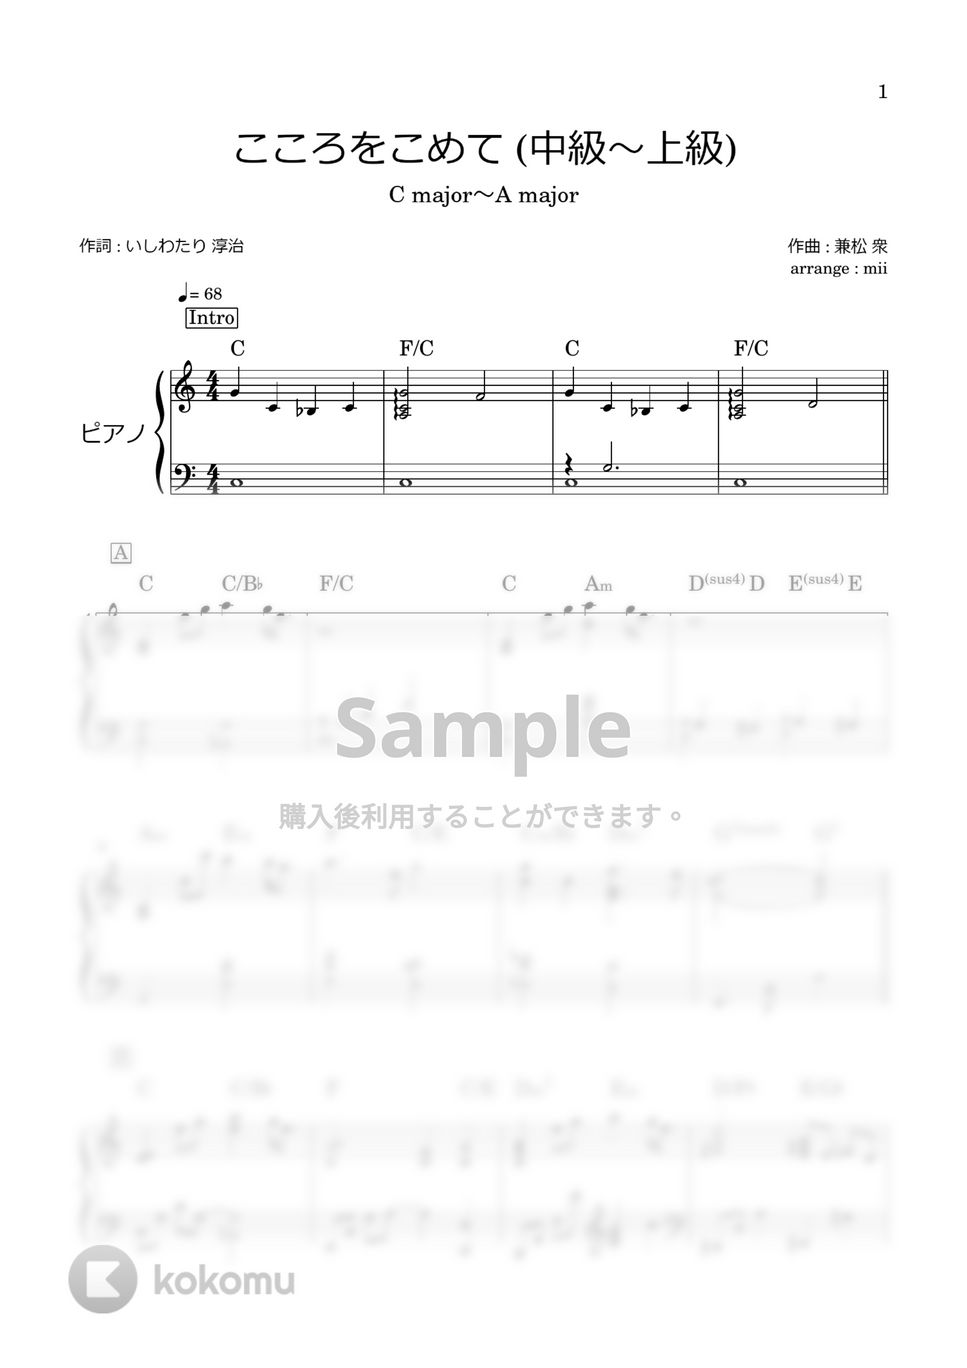 手嶌 葵 - こころをこめて (中級) by miiの楽譜棚